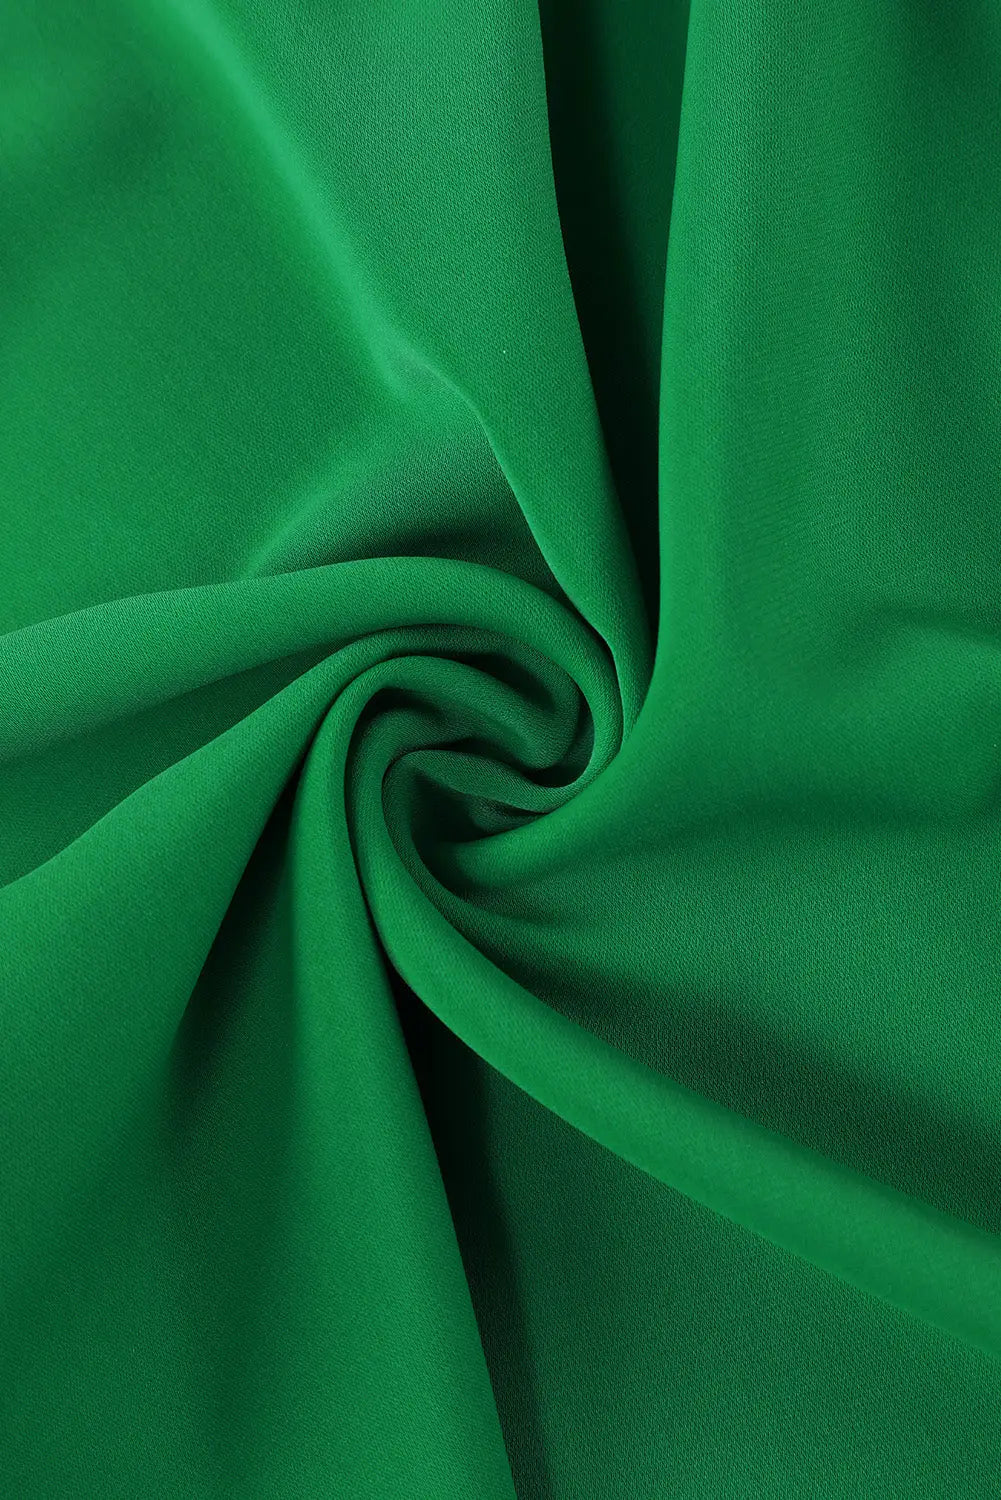 Green 3/4 puff sleeve oversize shirt - tops